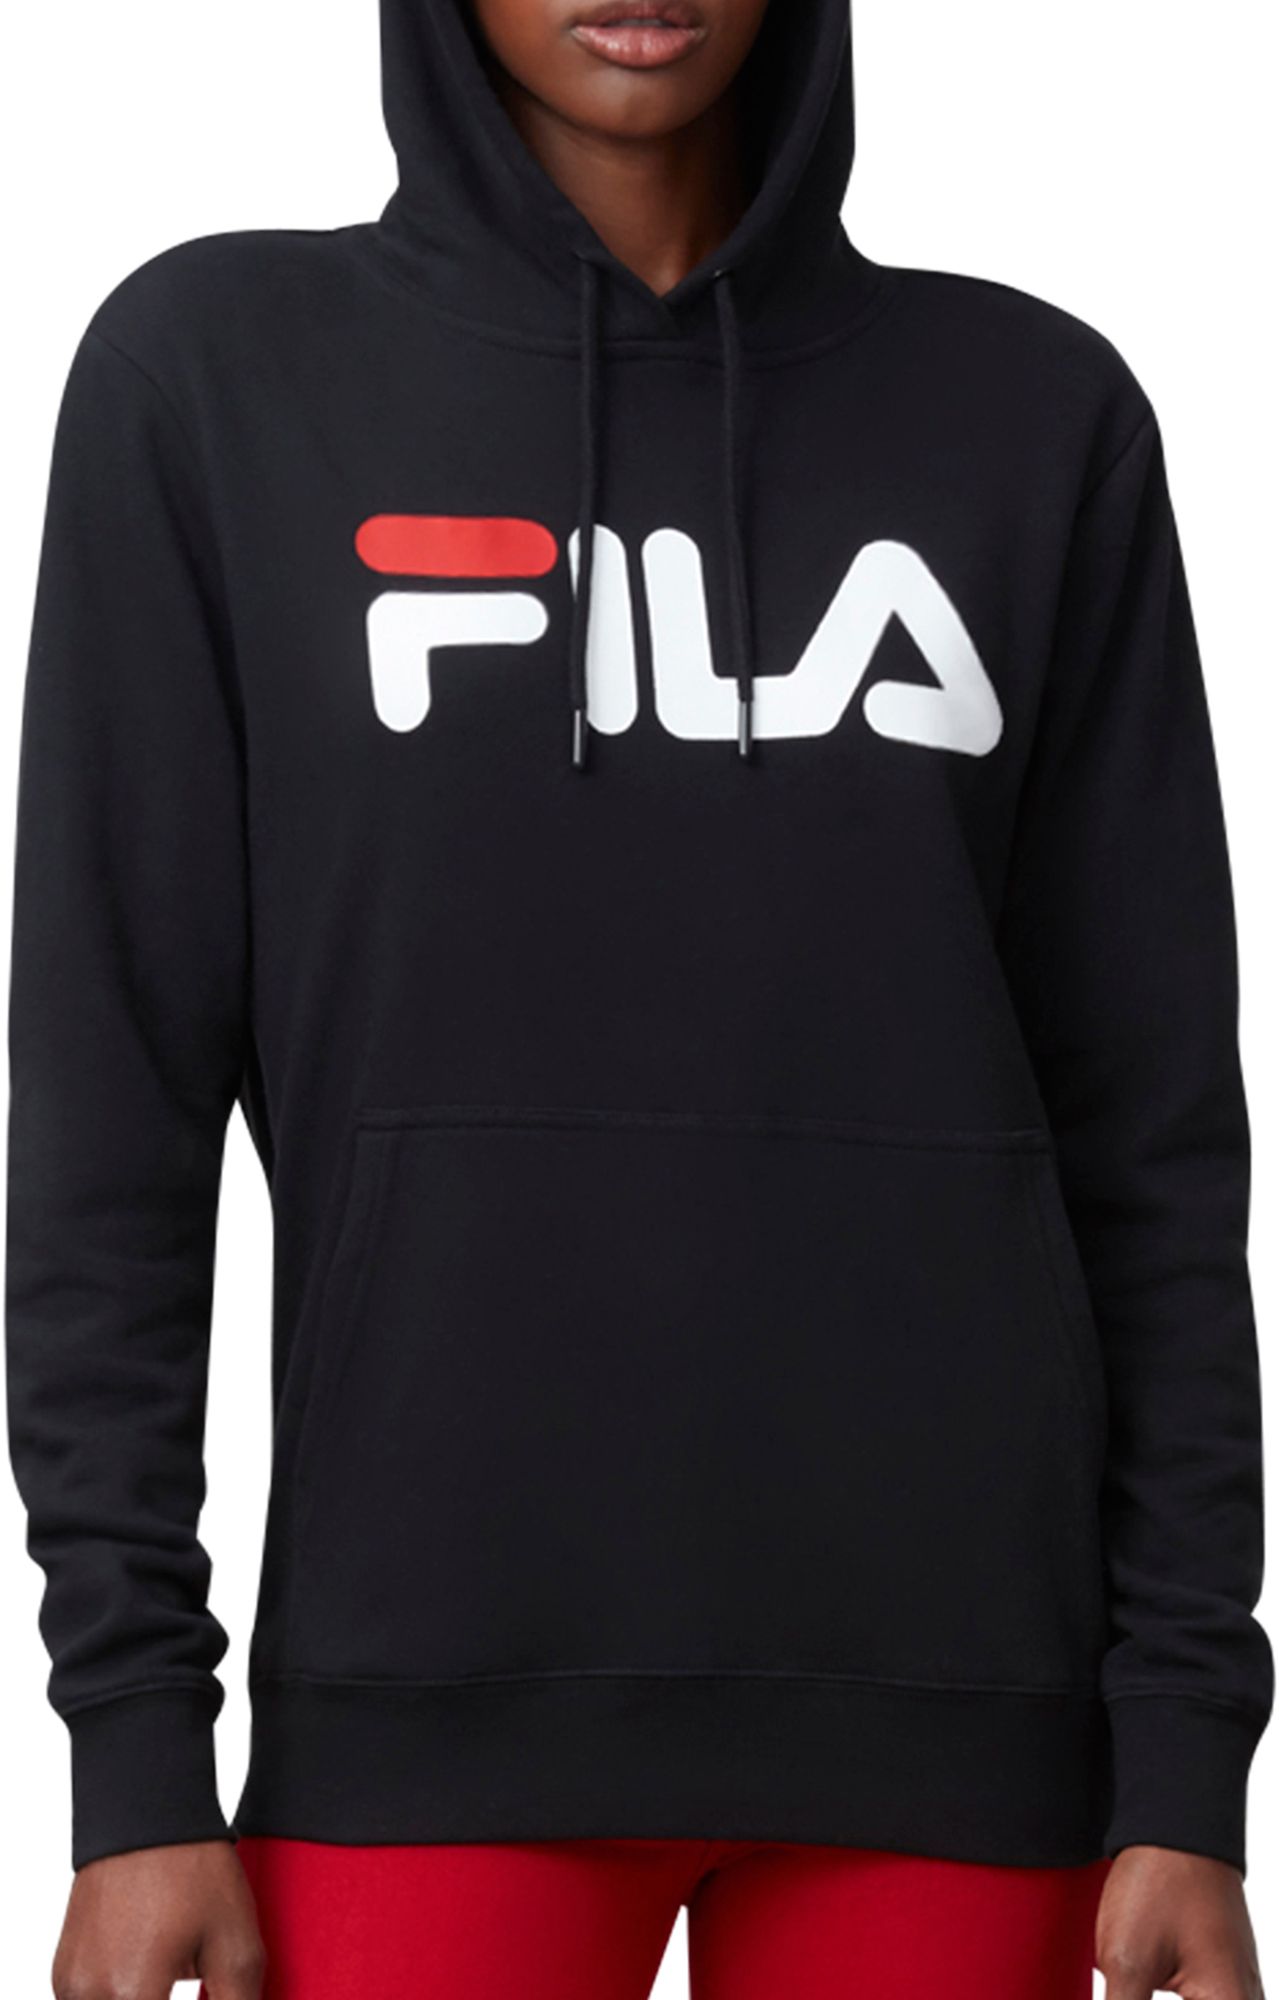 fila sweater price